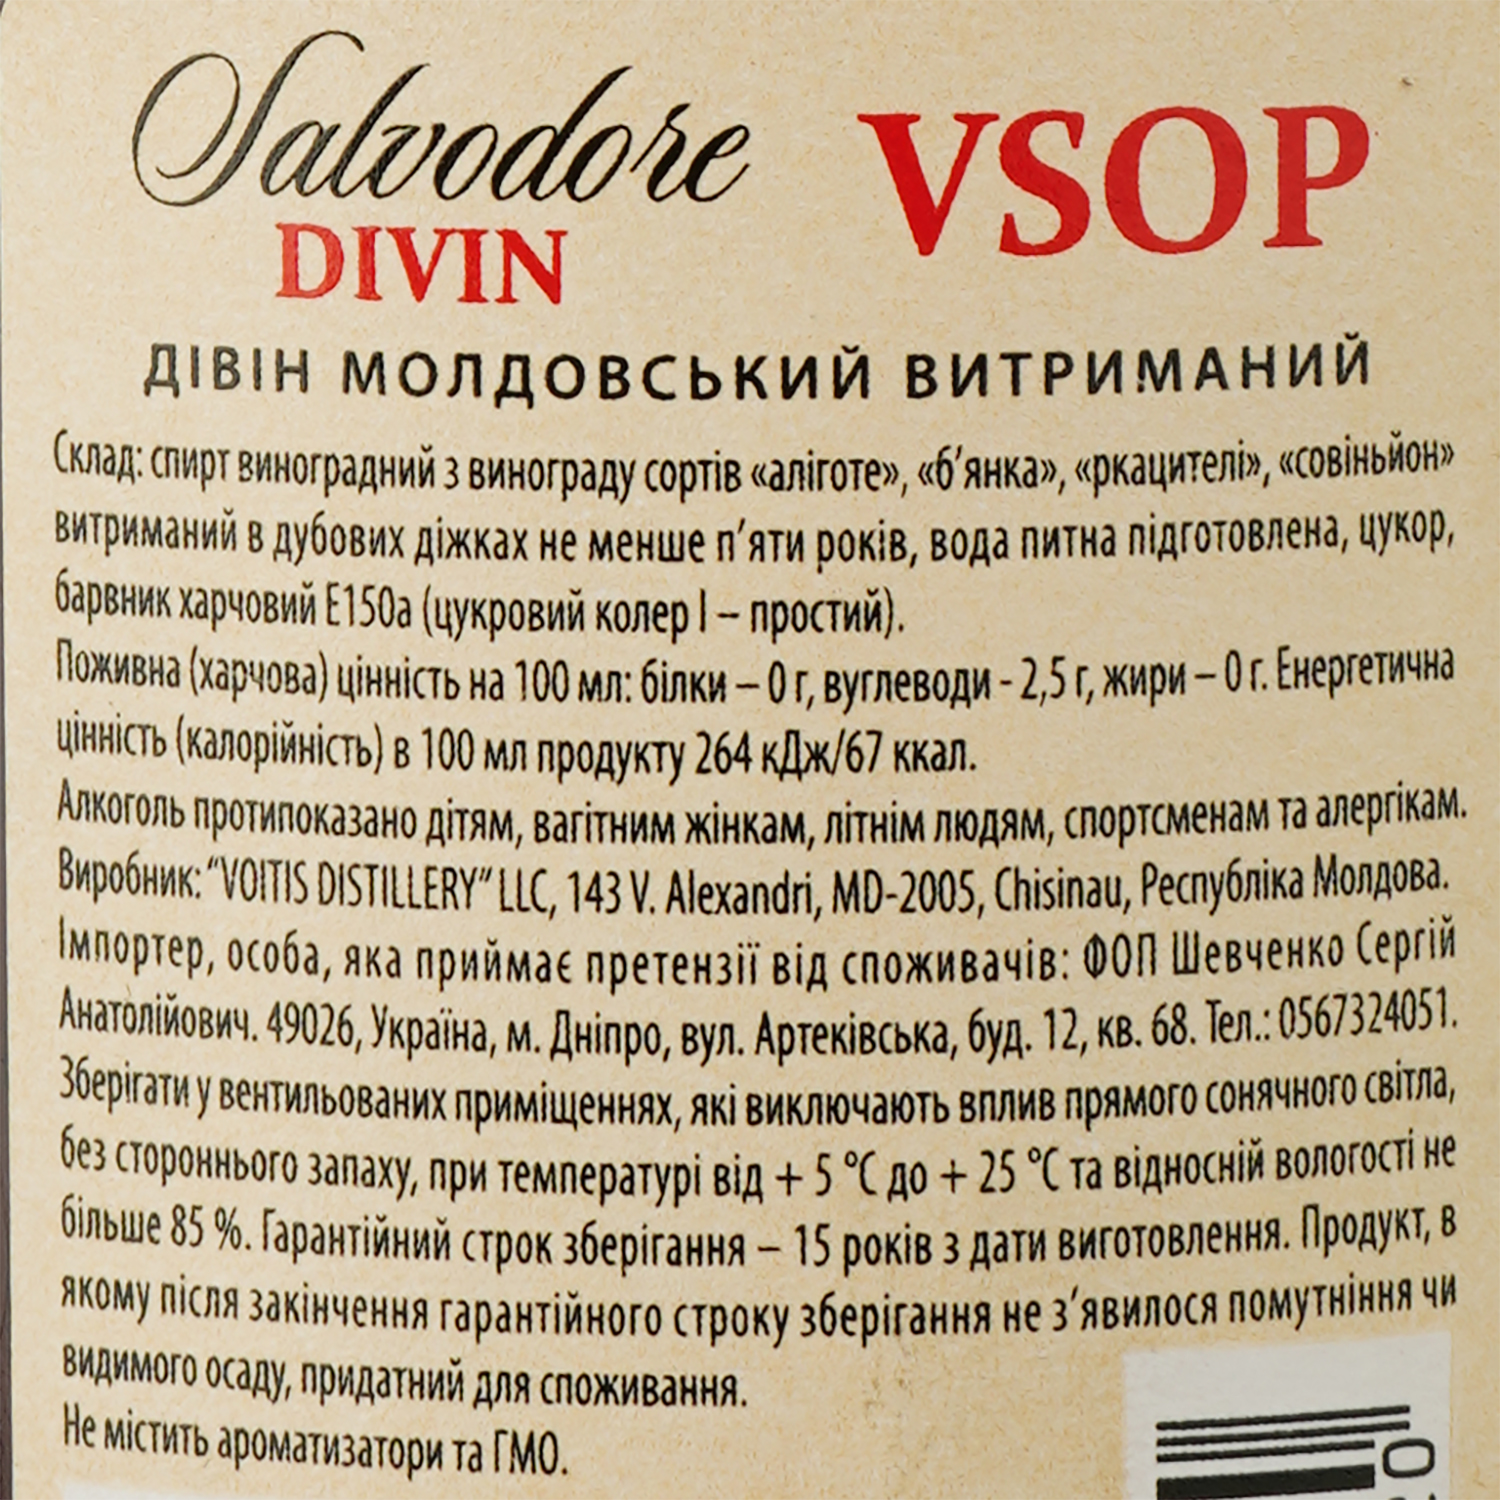 Дивин Salvodore VSOP, 40%, 0.5 л - фото 3